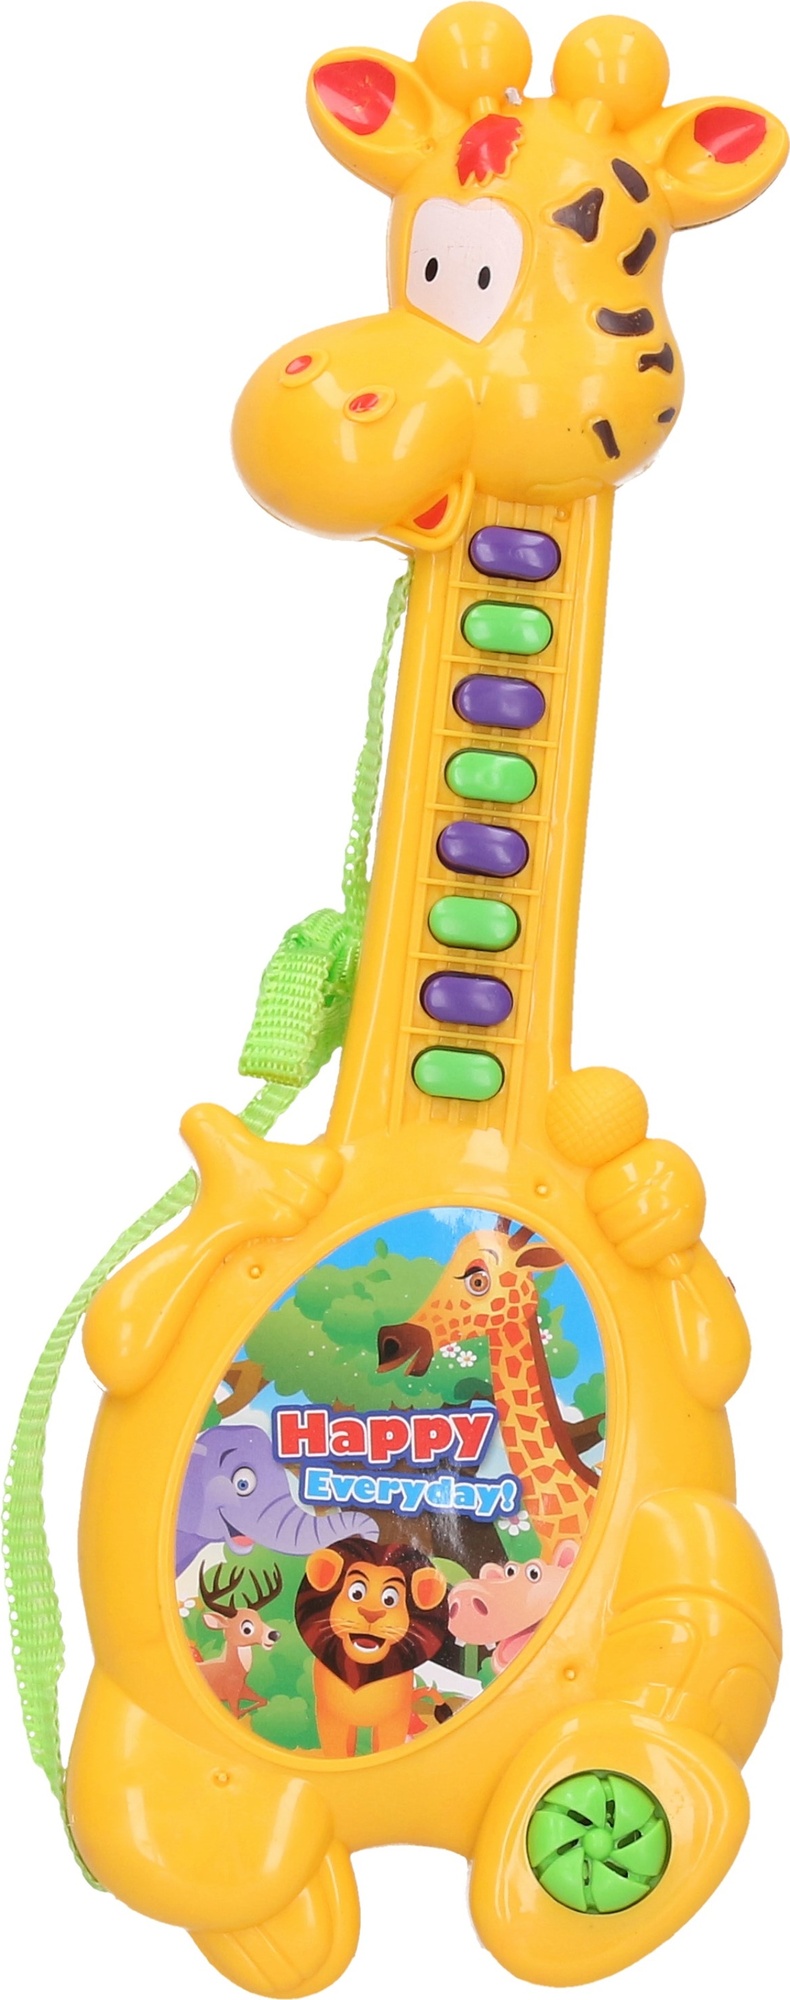 WIKY - Detské piano s efektami žirafa 31 cm